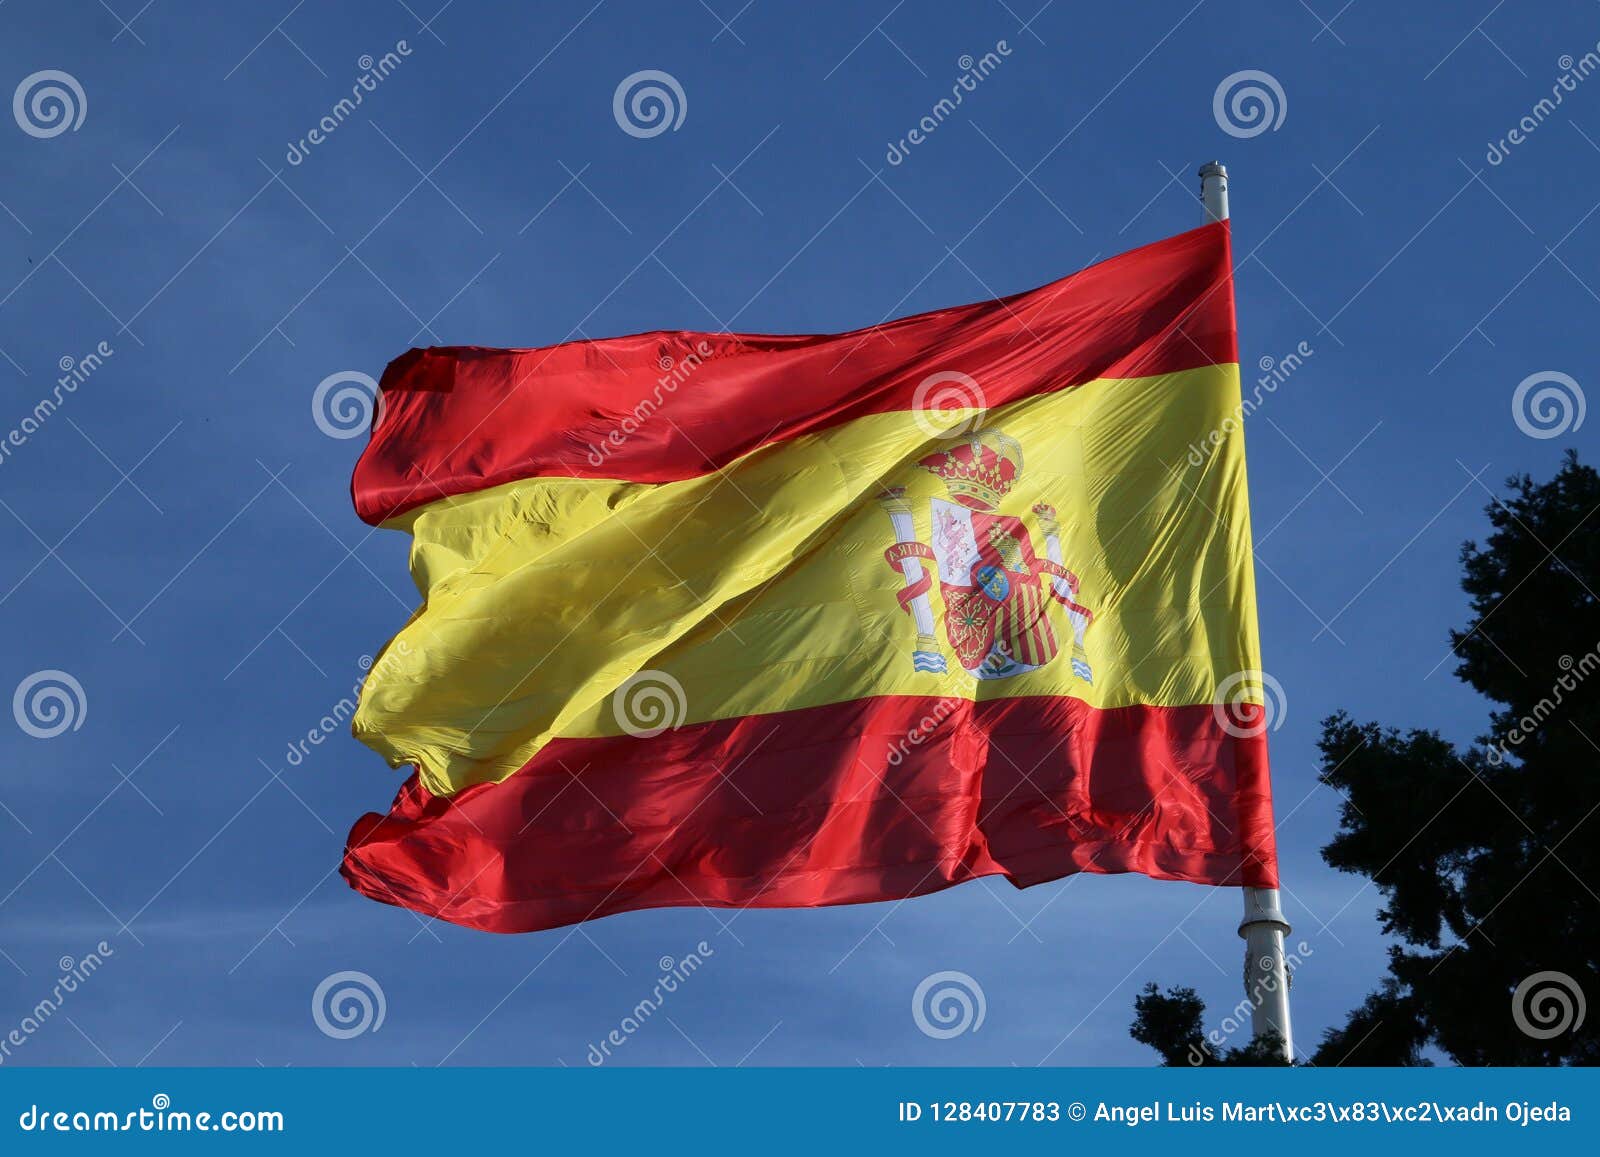 flag of spain. spanish patriotism in madrid, spain.